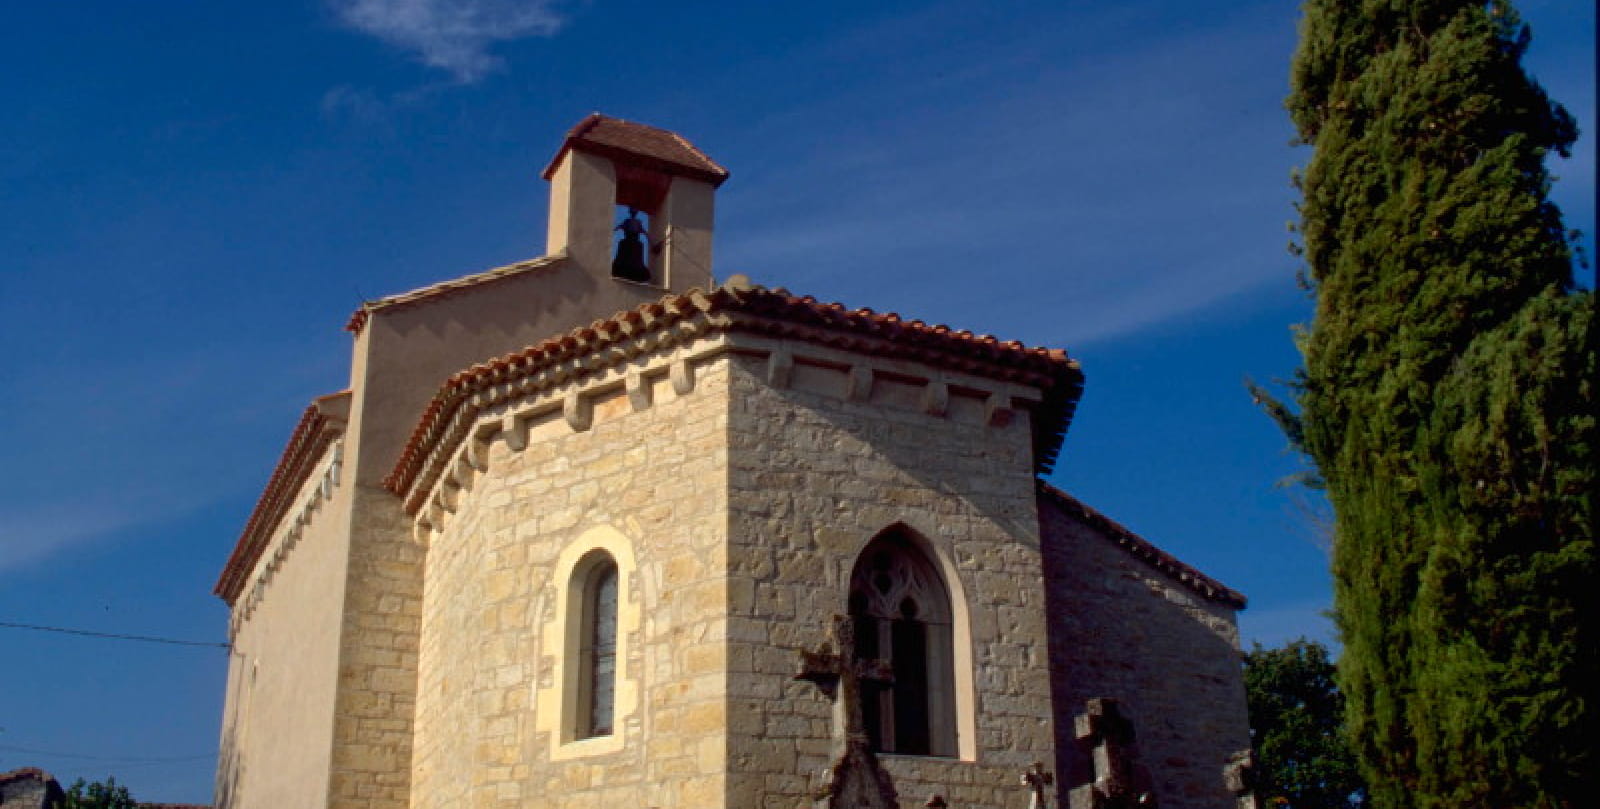 Labastide Marnhac: Romanesque church of Salgae